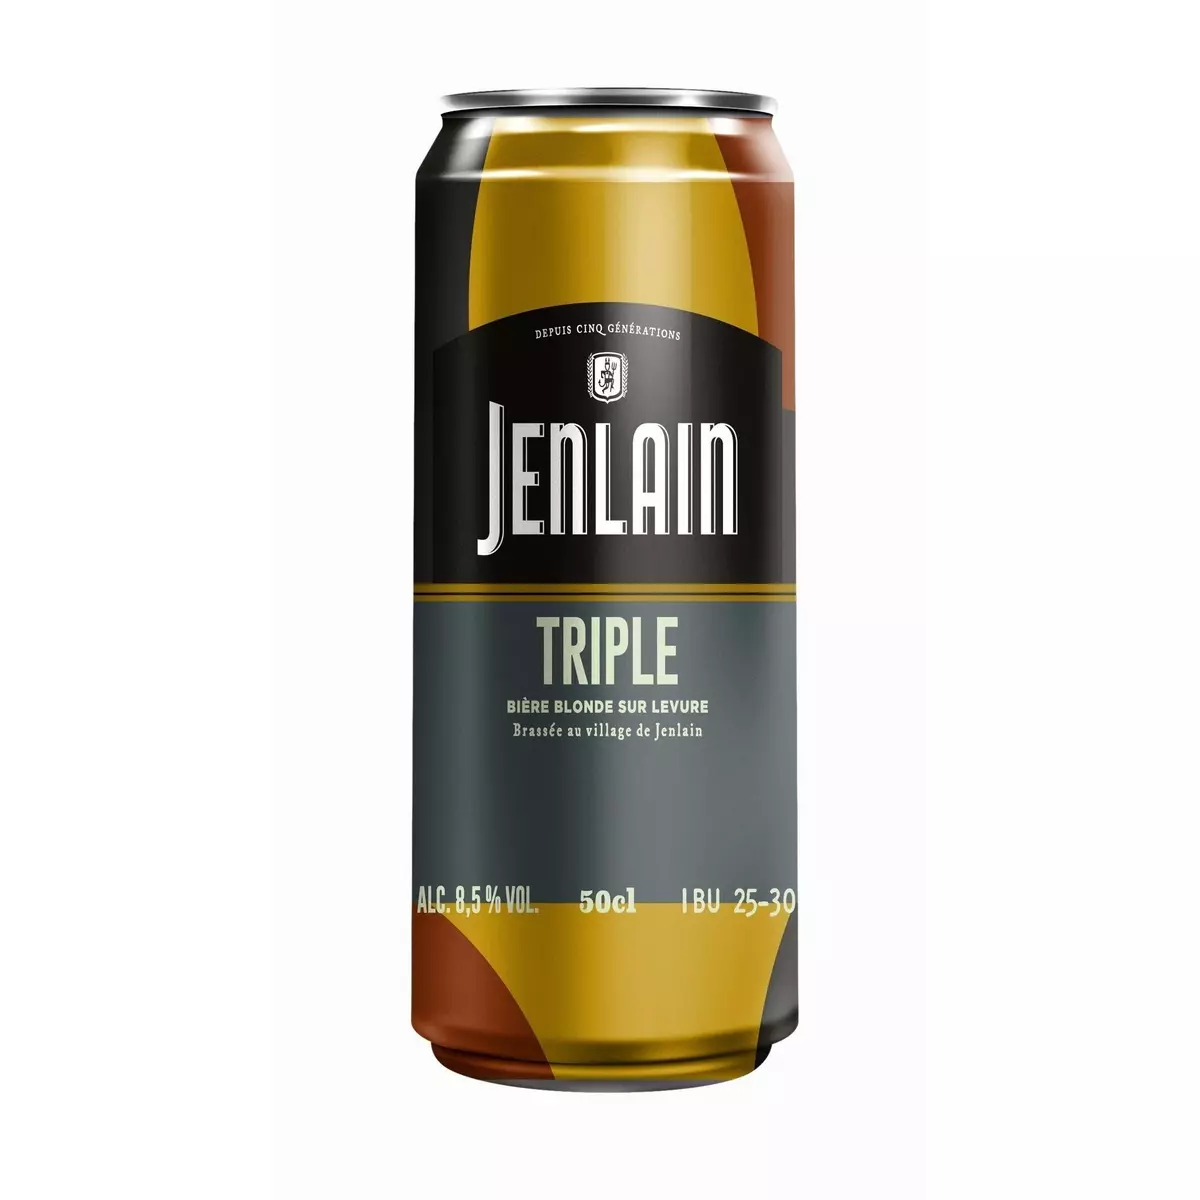 JENLAIN Bière blonde triple 8.5% 50cl